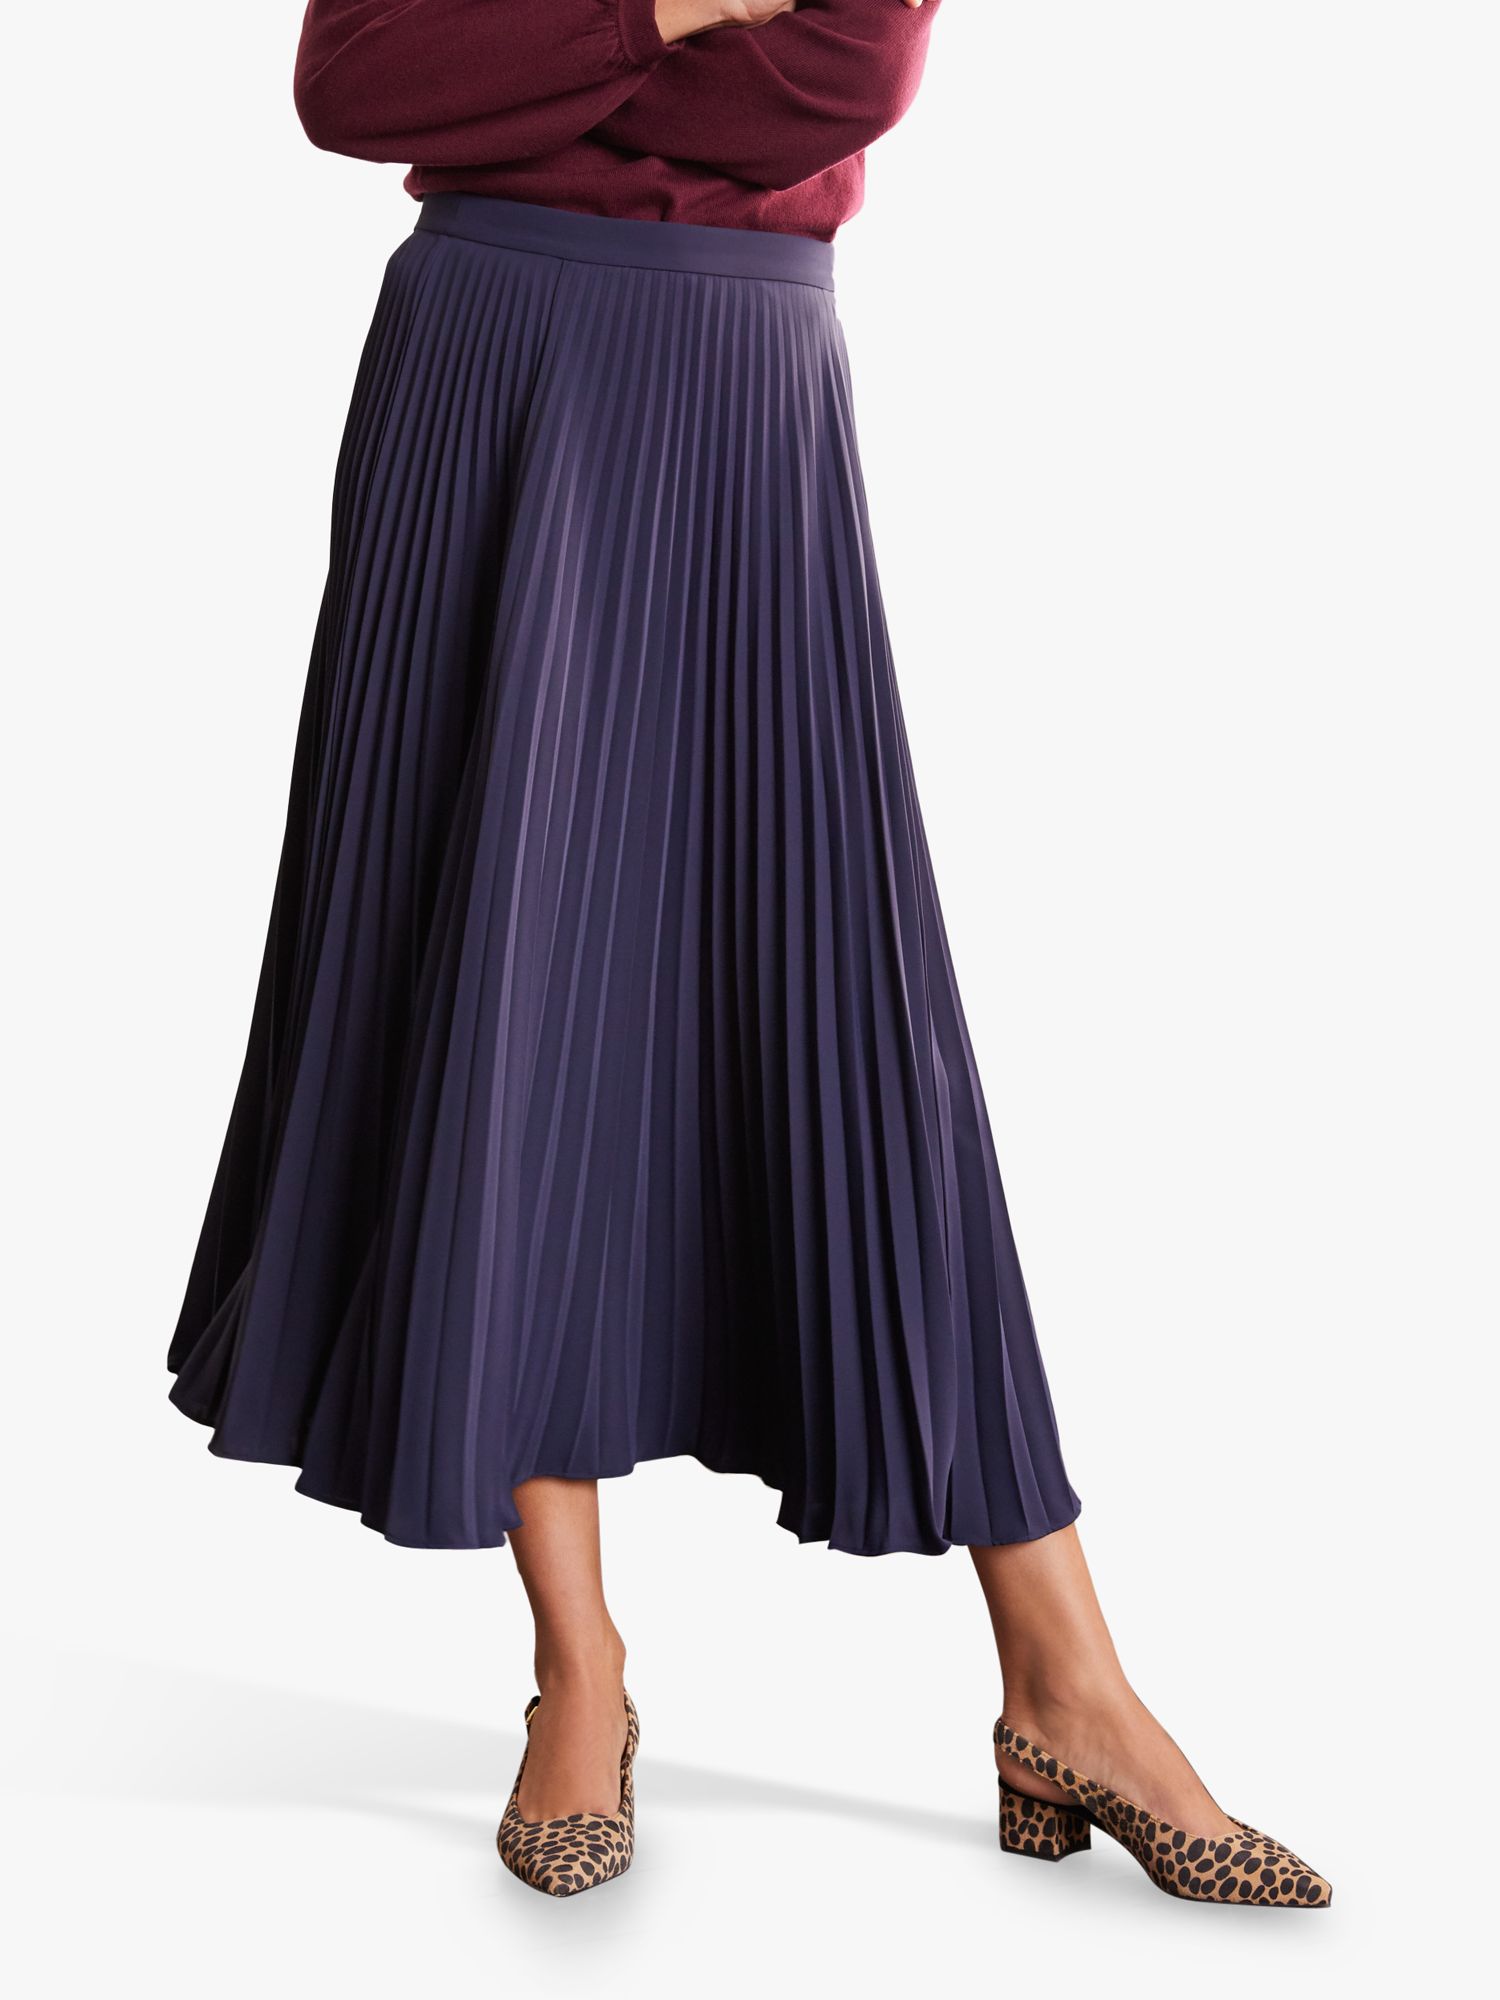 Boden Kristen Pleated Skirt, Navy at John Lewis & Partners